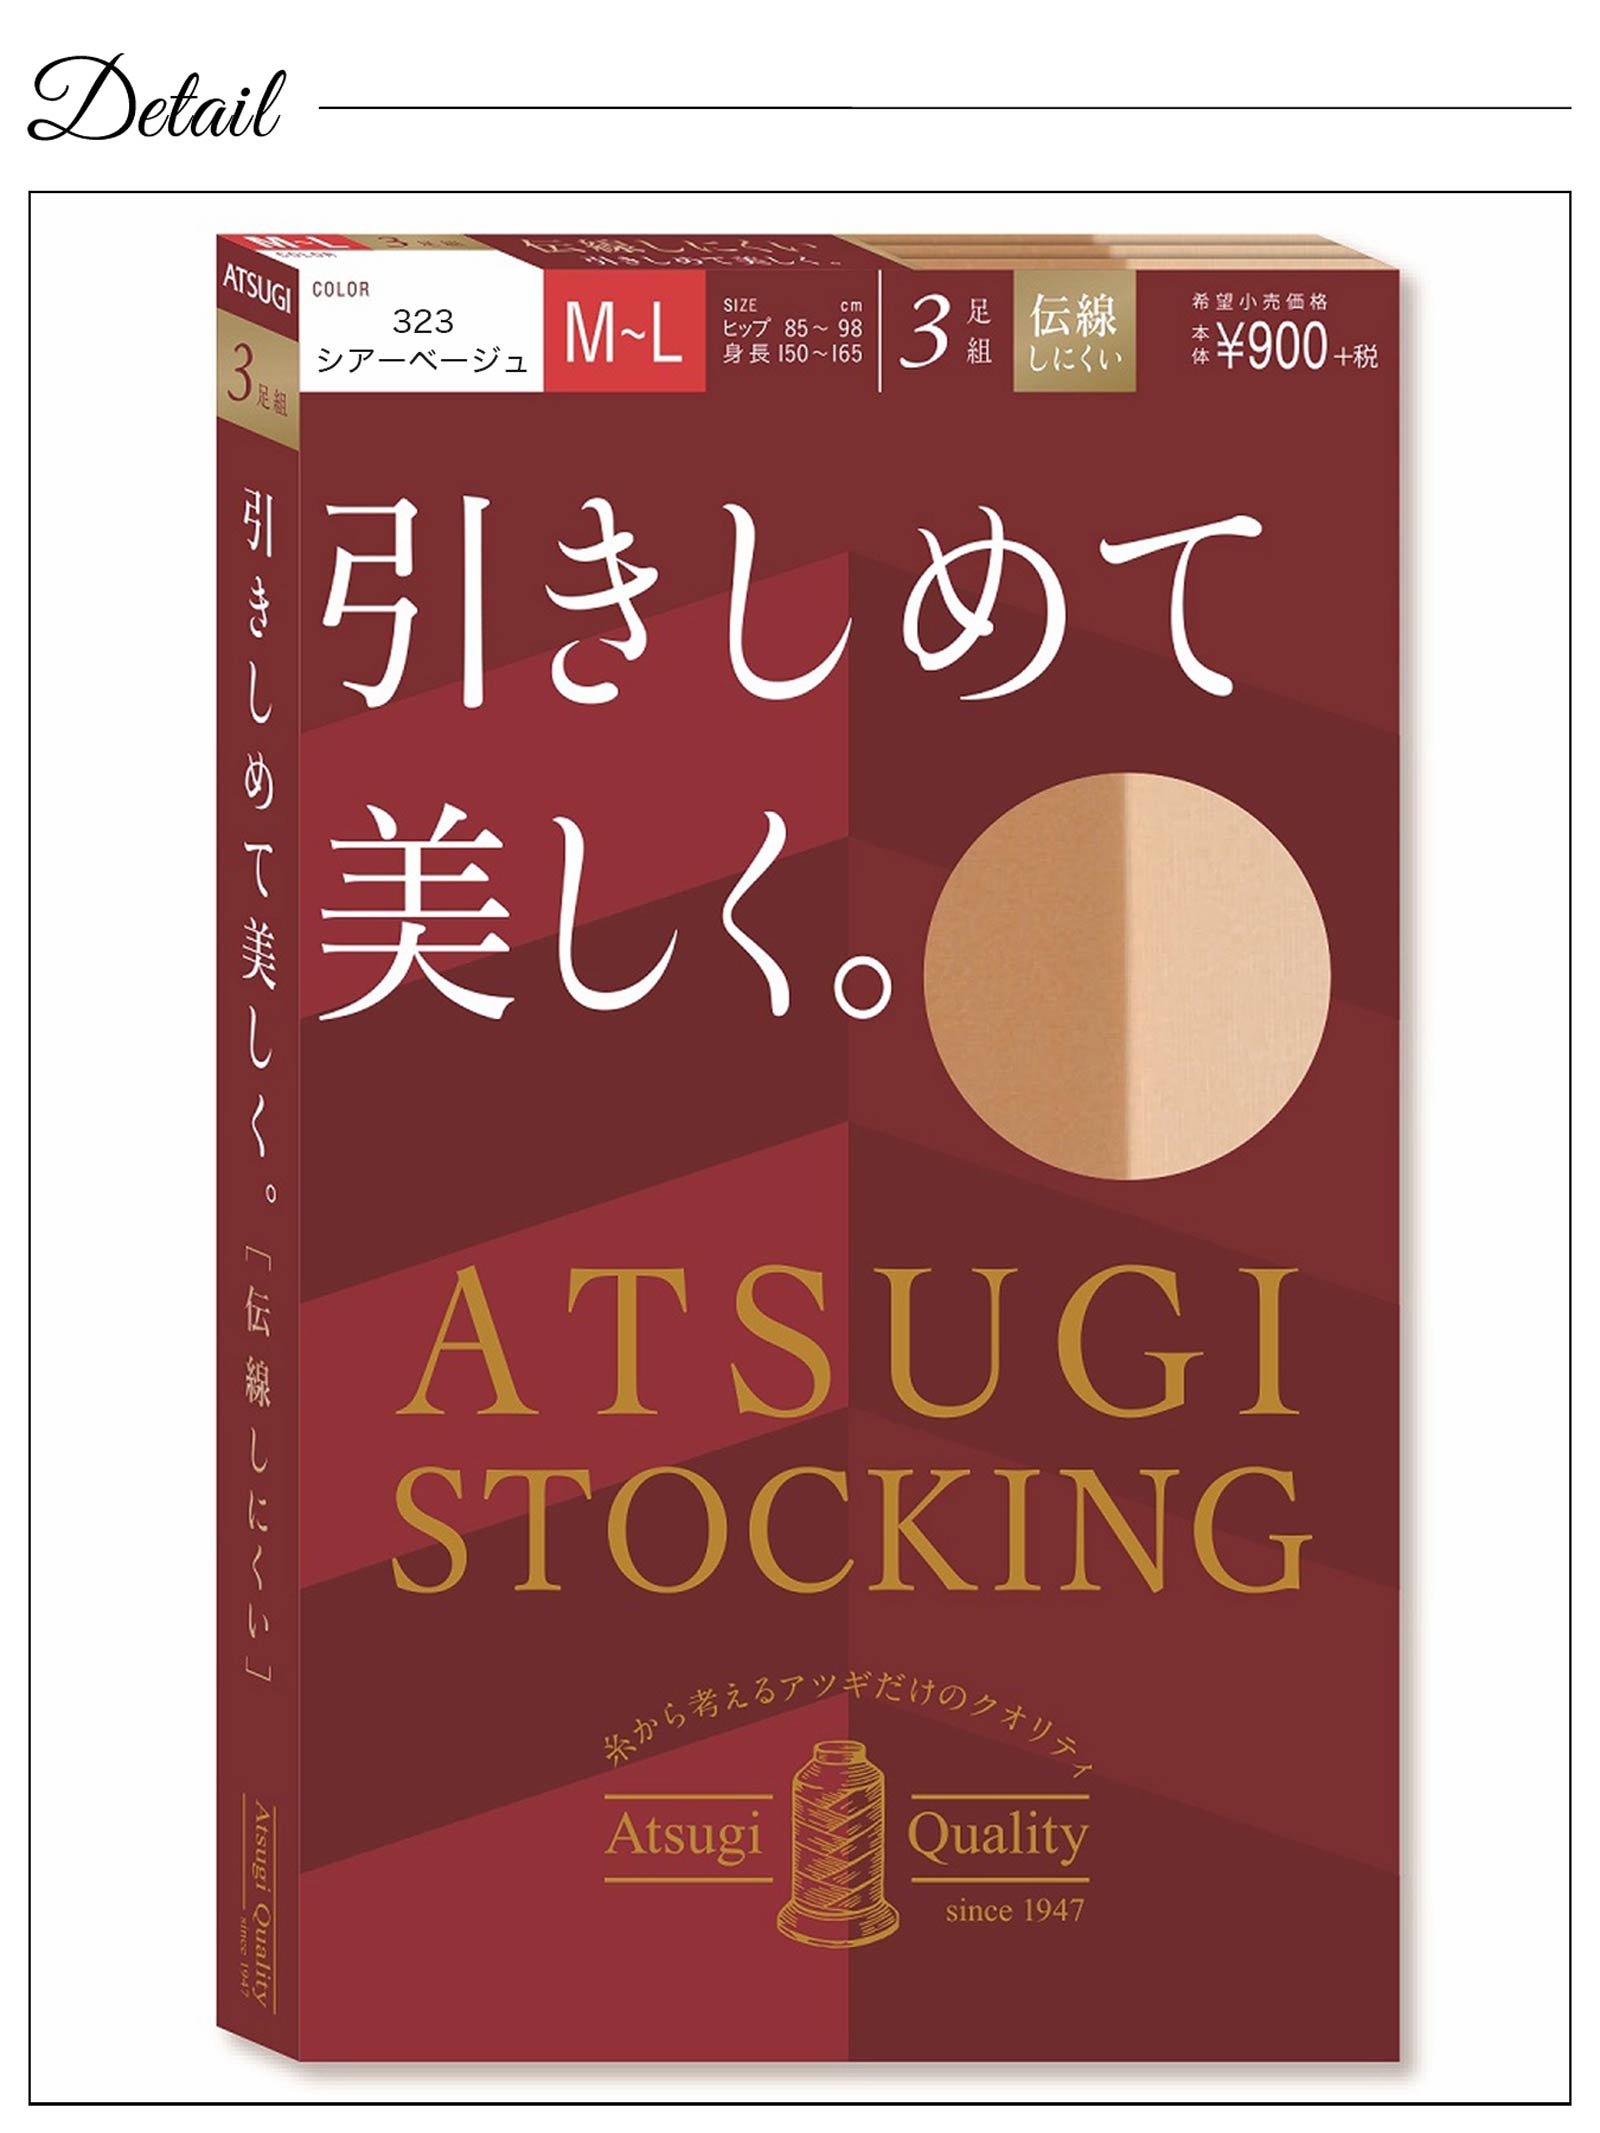 【ATSUGI STOCKING】アツギストッキング 引きしめて美しく。 3足組 ストッキング